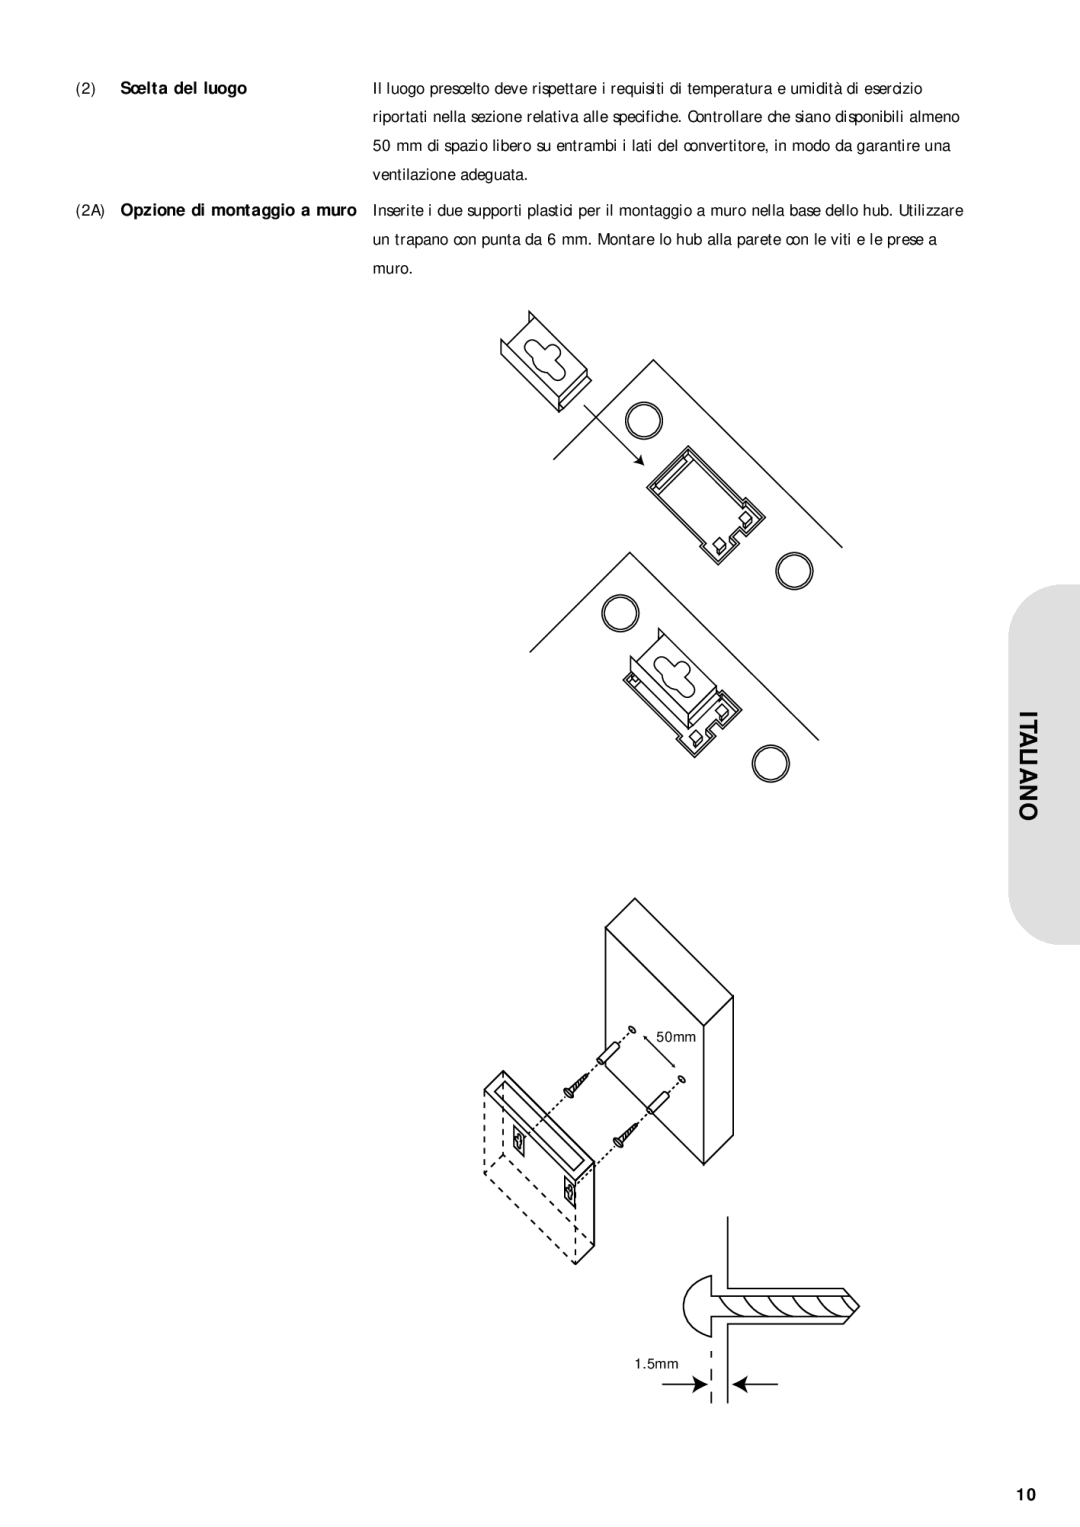 Corega USB2-HUB7 warranty Scelta del luogo, ventilazione adeguata, Italiano, 2A Opzione di montaggio a muro 